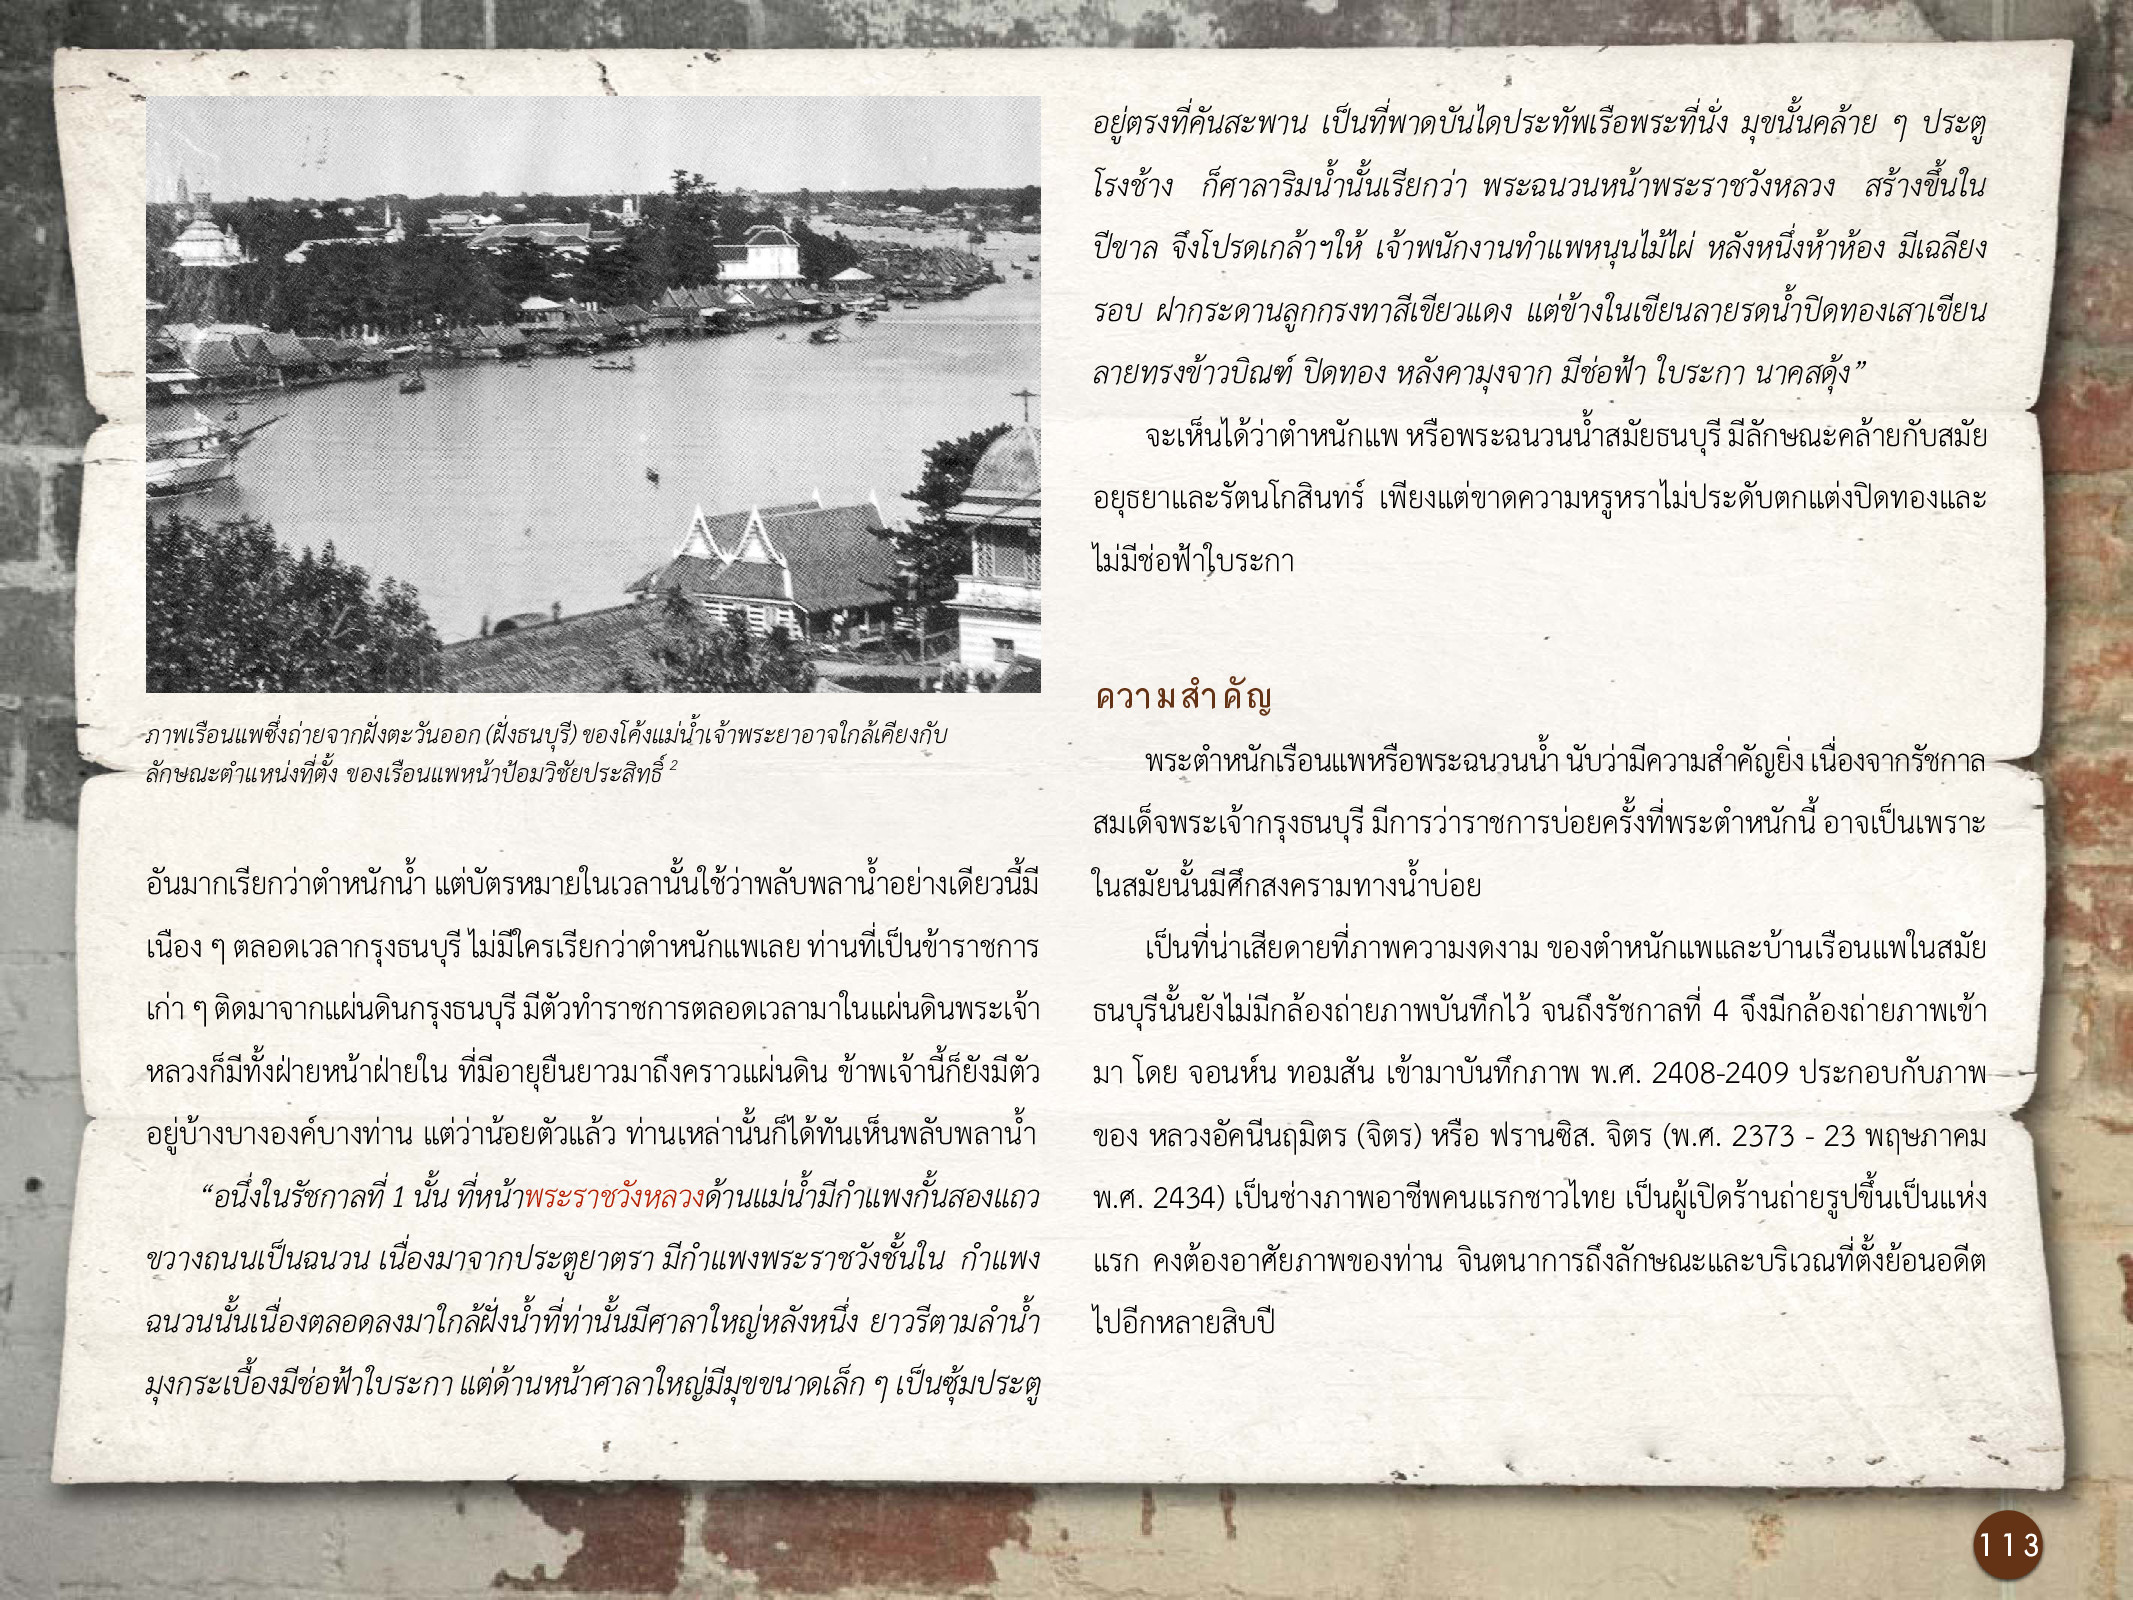 ศิลปกรรมกรุงธนบุรี ./images/encyclopedia/113.jpg